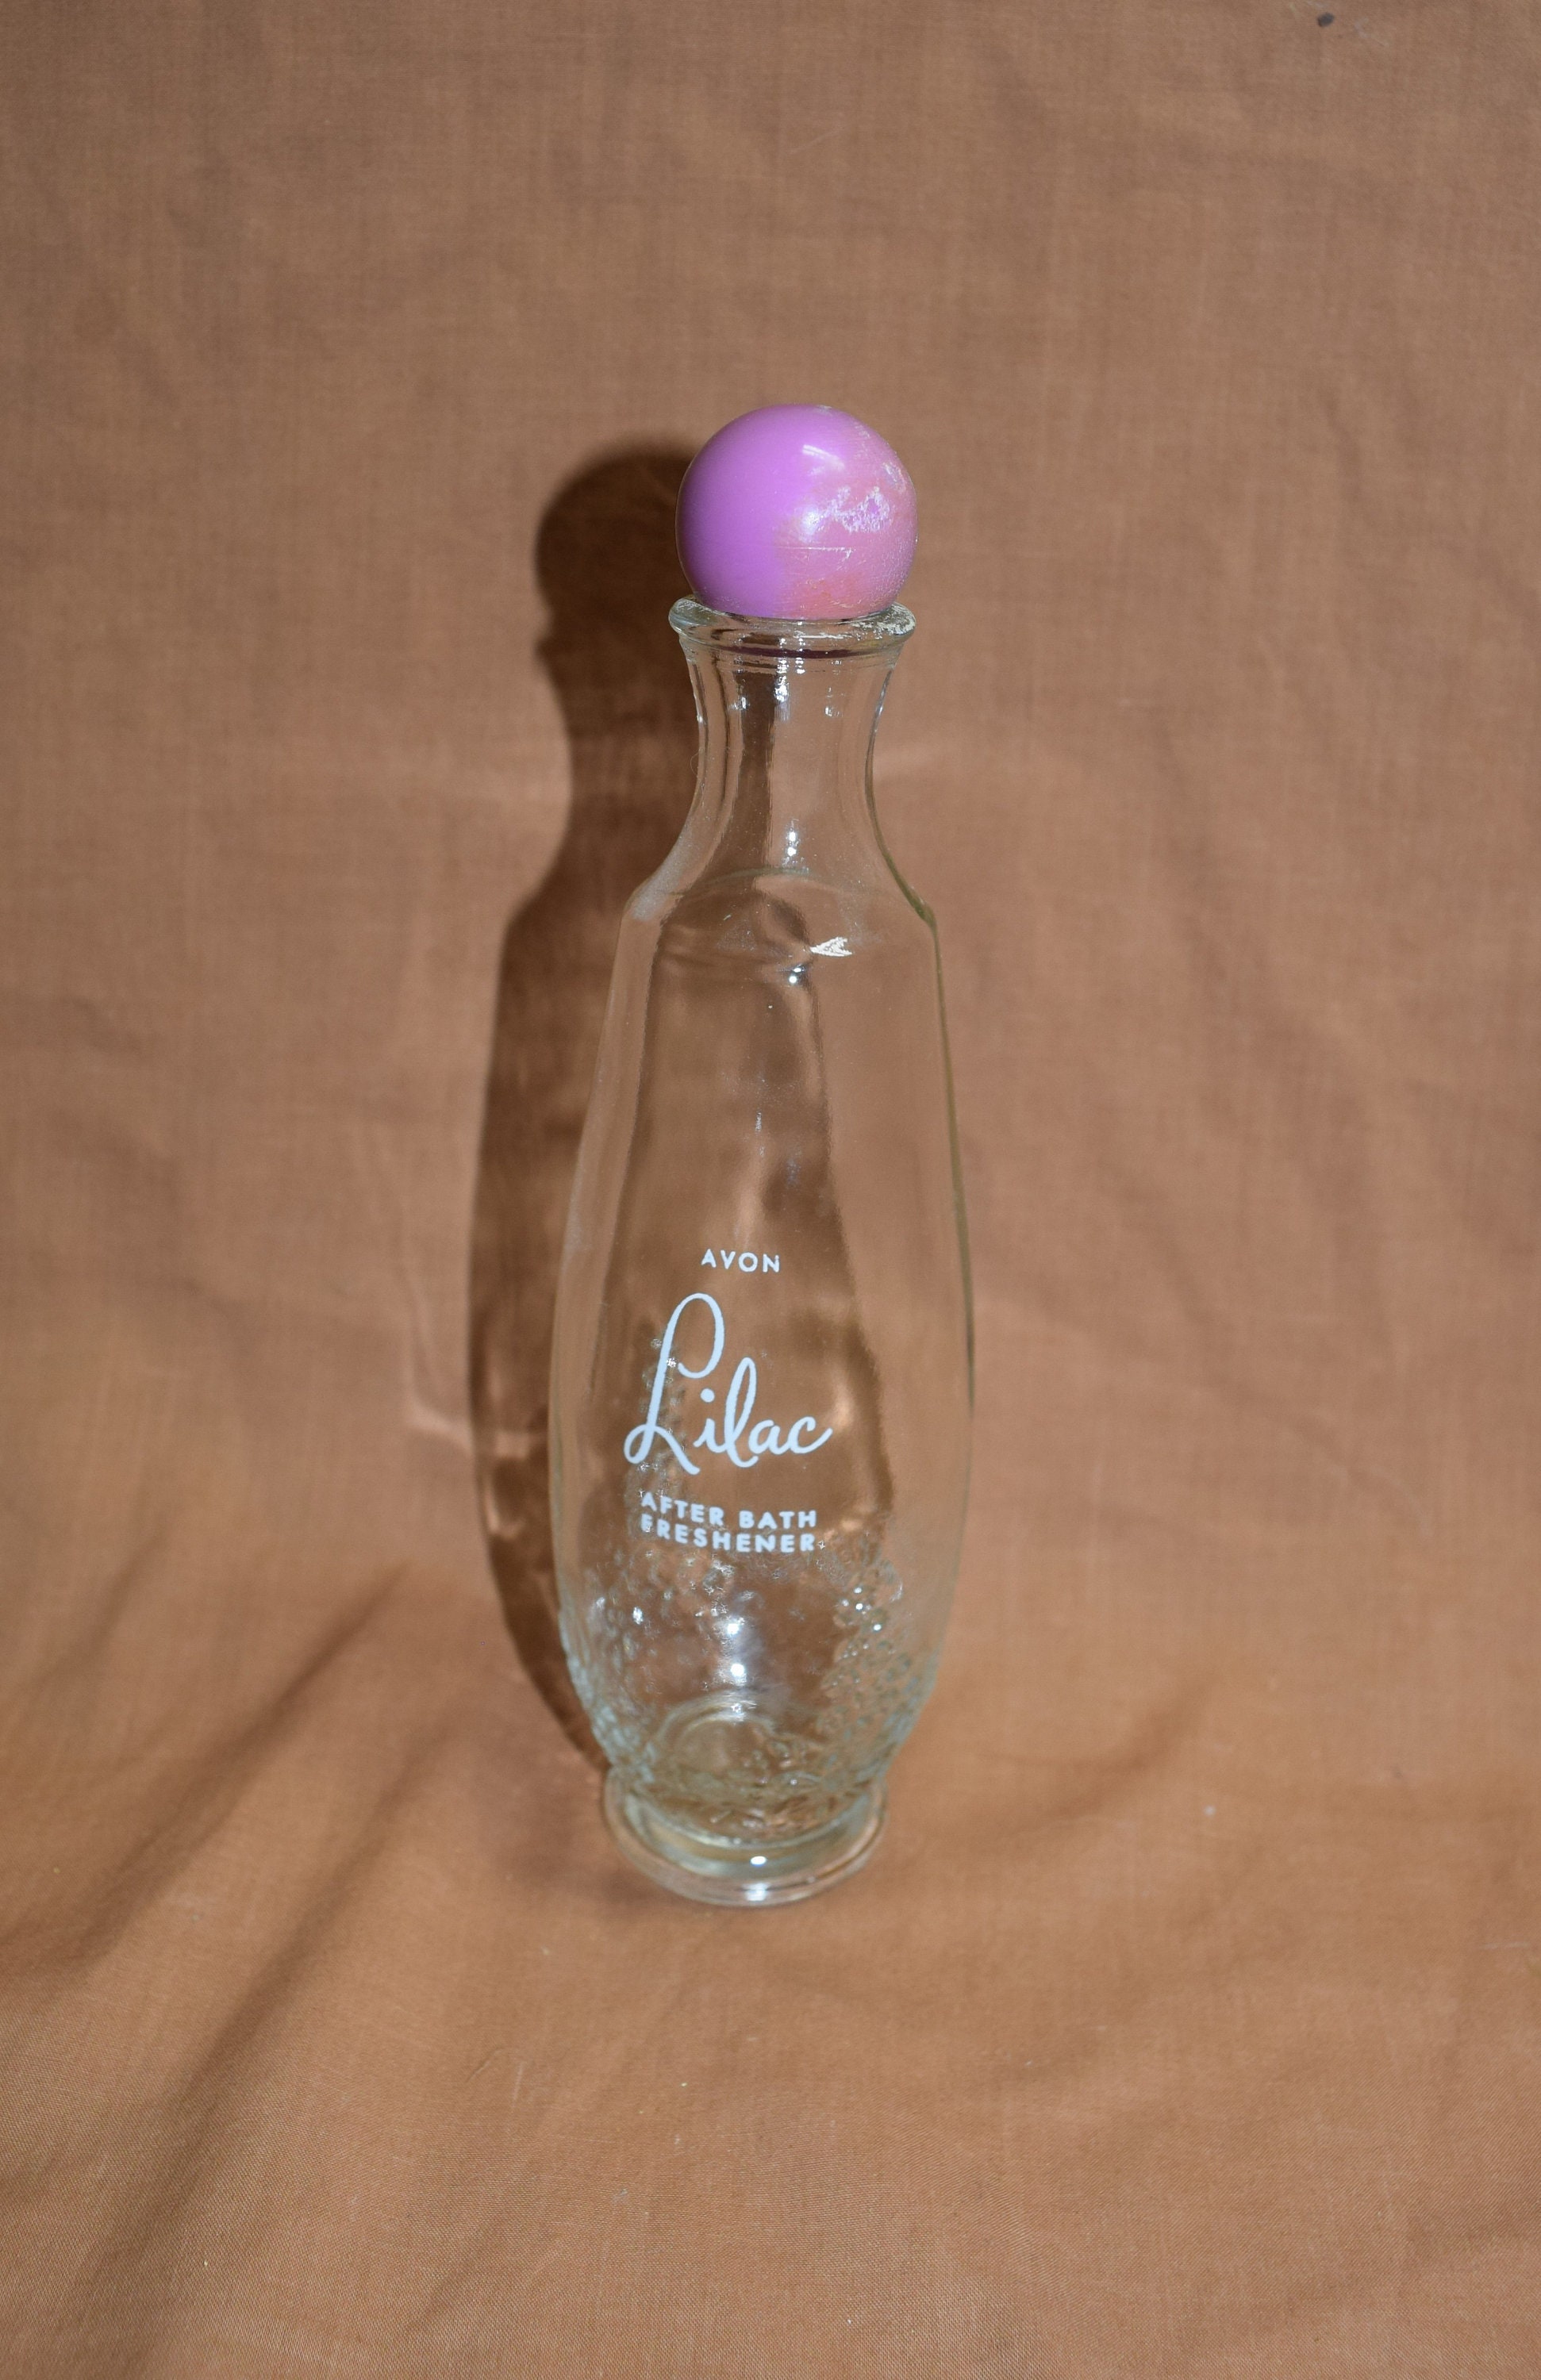 Avon California White Lilac Perfume